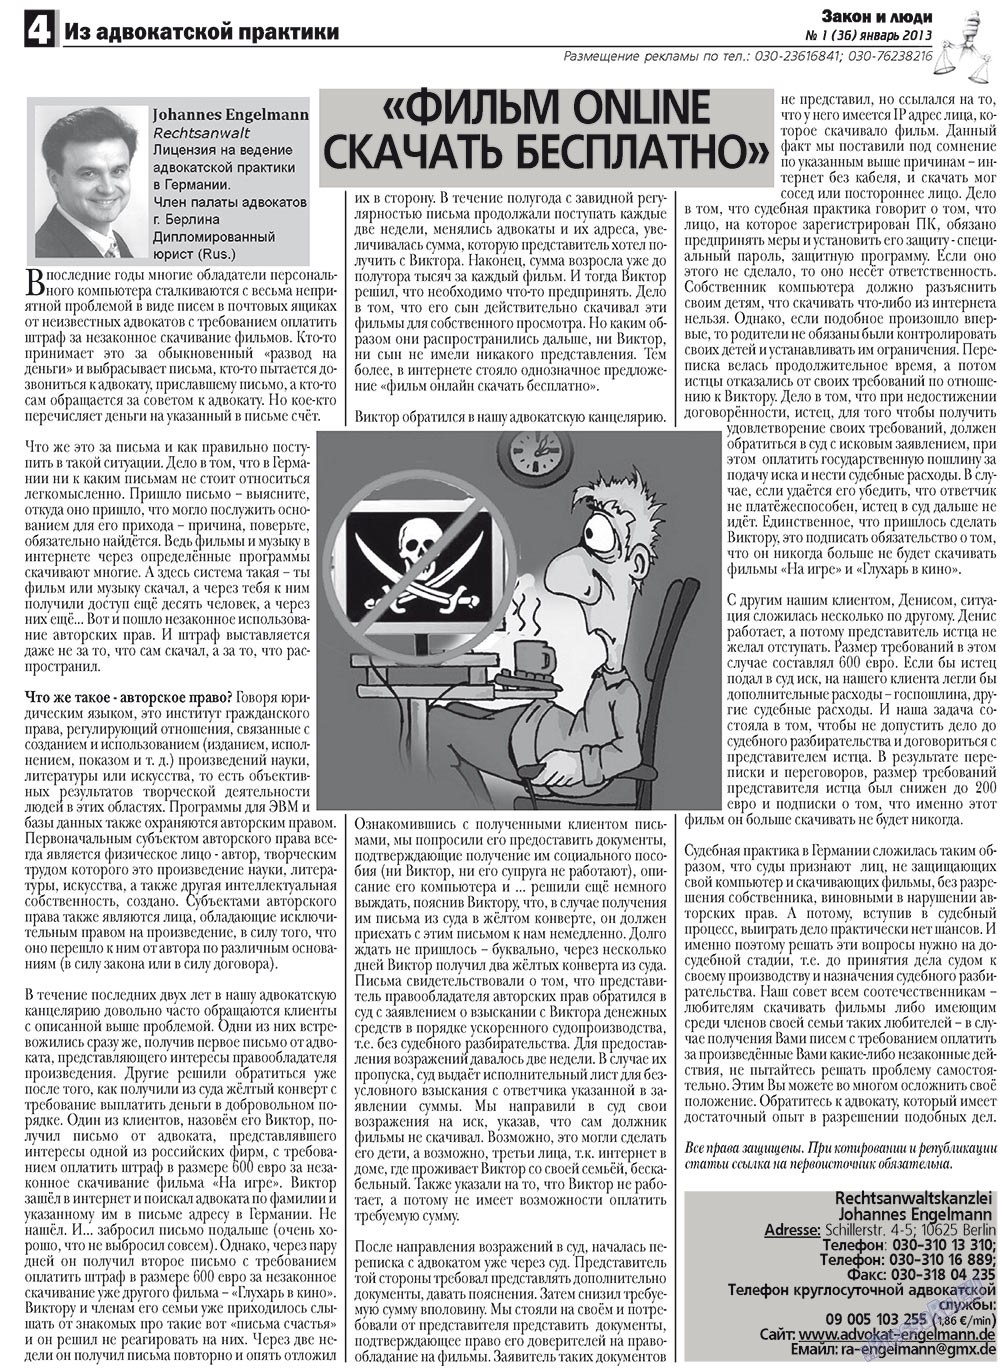 Закон и люди, газета. 2013 №1 стр.4